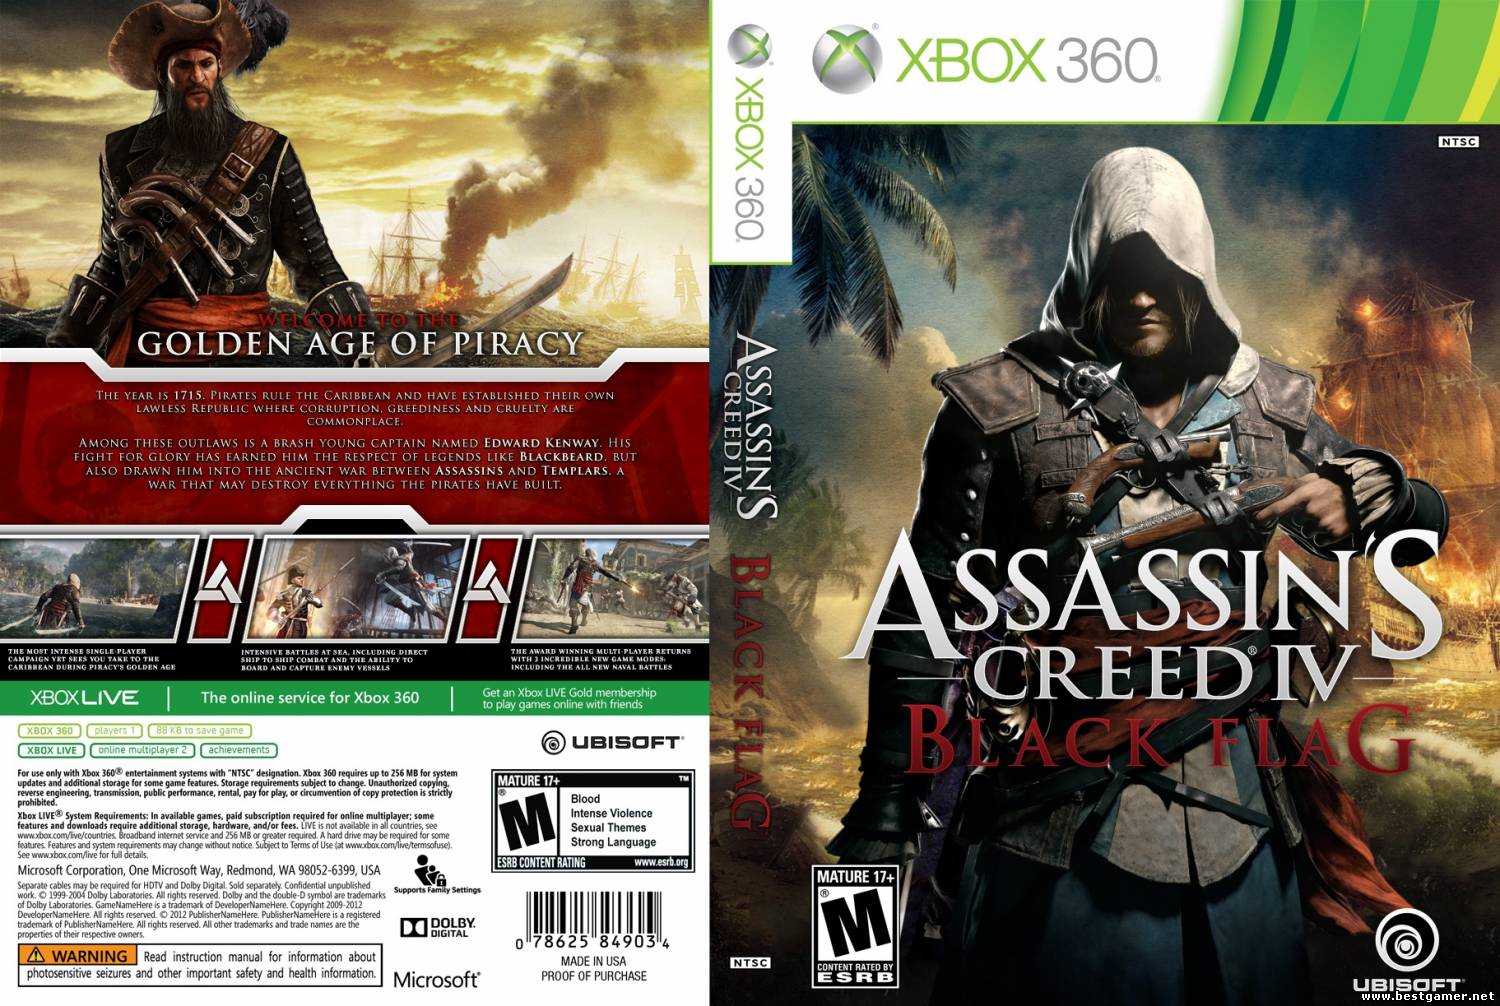 Игры можно играть на xbox 360. Обложки игр для Xbox 360. Ассасин Крид 4 обложка хбокс 360. Assassins Creed Black Flag Xbox 360 обложка. Обложки игр ассасин Крид 4 хбокс 360.